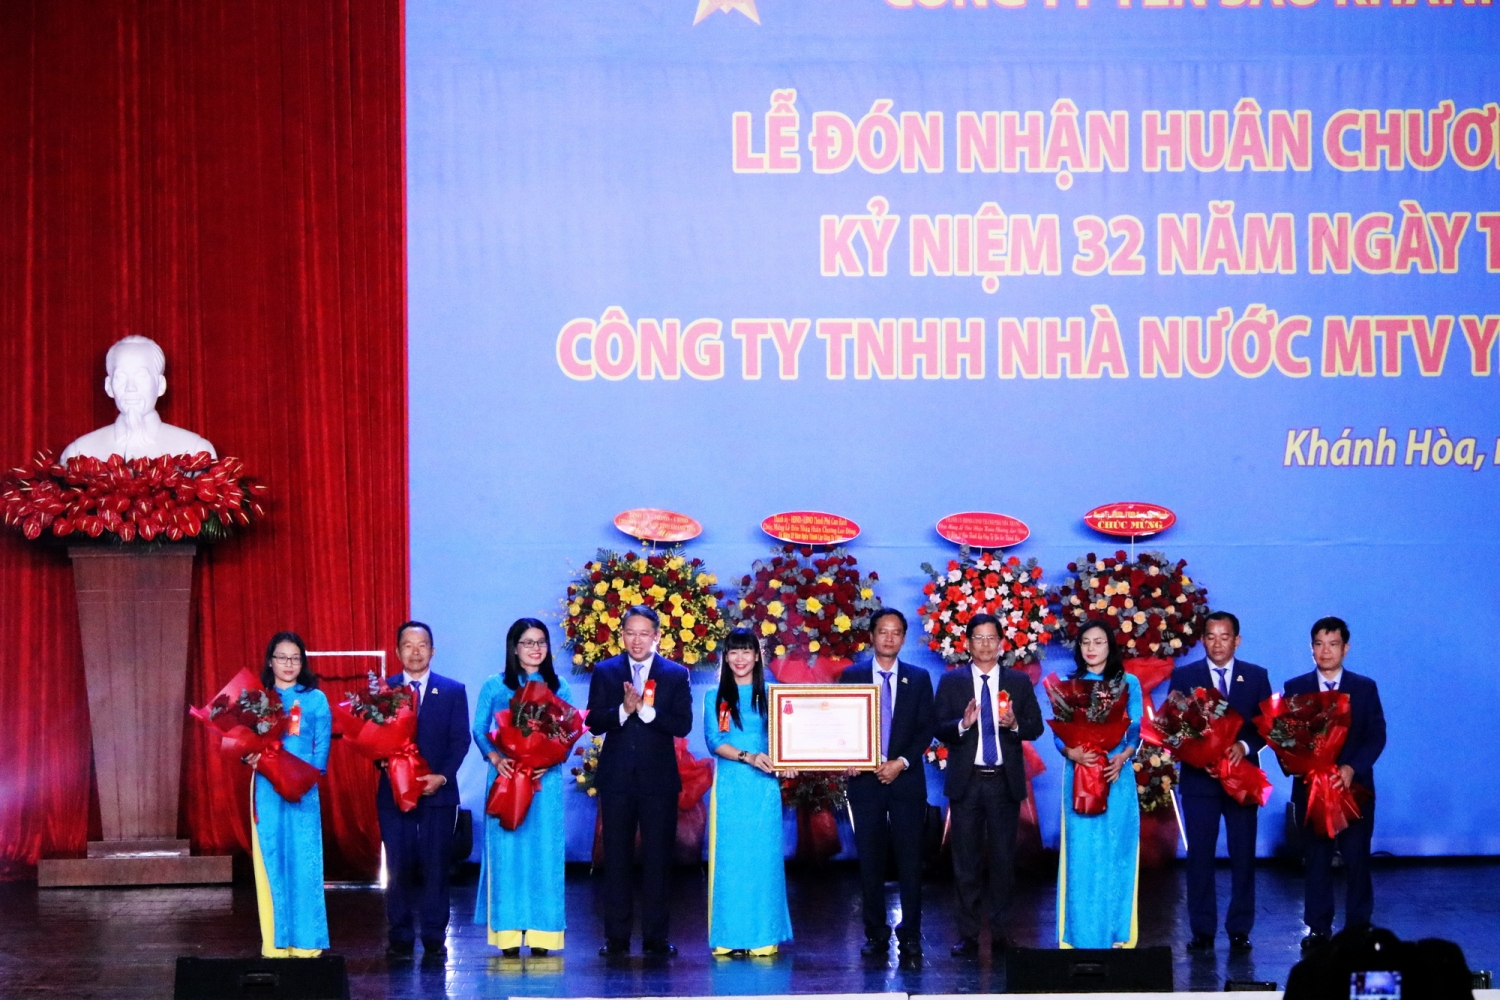 Công ty Yến sào Khánh Hòa đón nhận Huân chương Lao động nhân dịp kỷ niệm 32 năm ngày thành lập